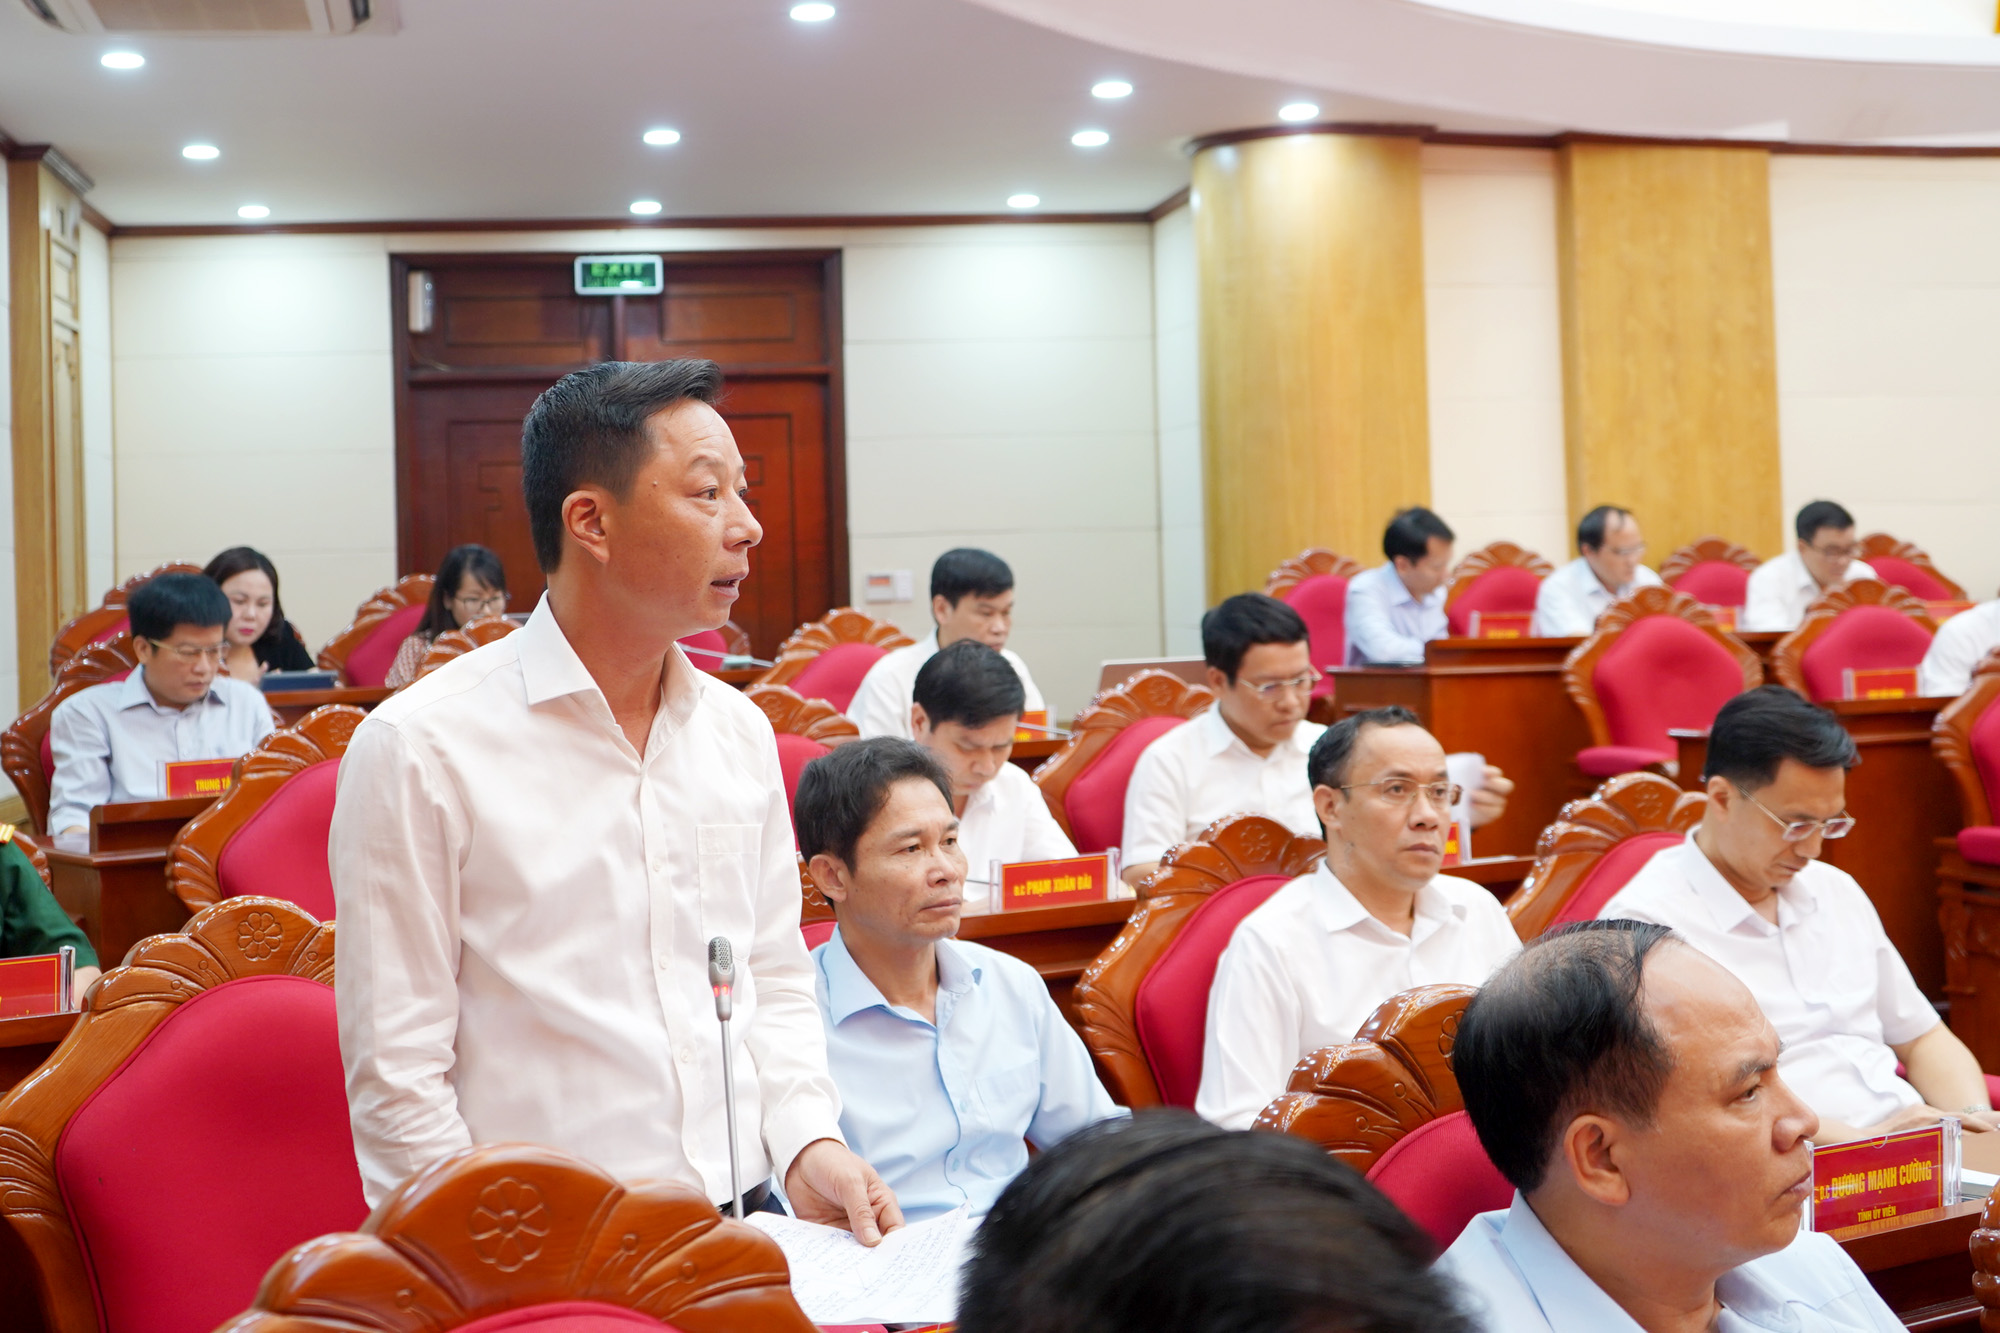 Đồng chí Lê Văn Ánh, Bí thư Thành ủy Móng Cái, phát biểu tại hội nghị.